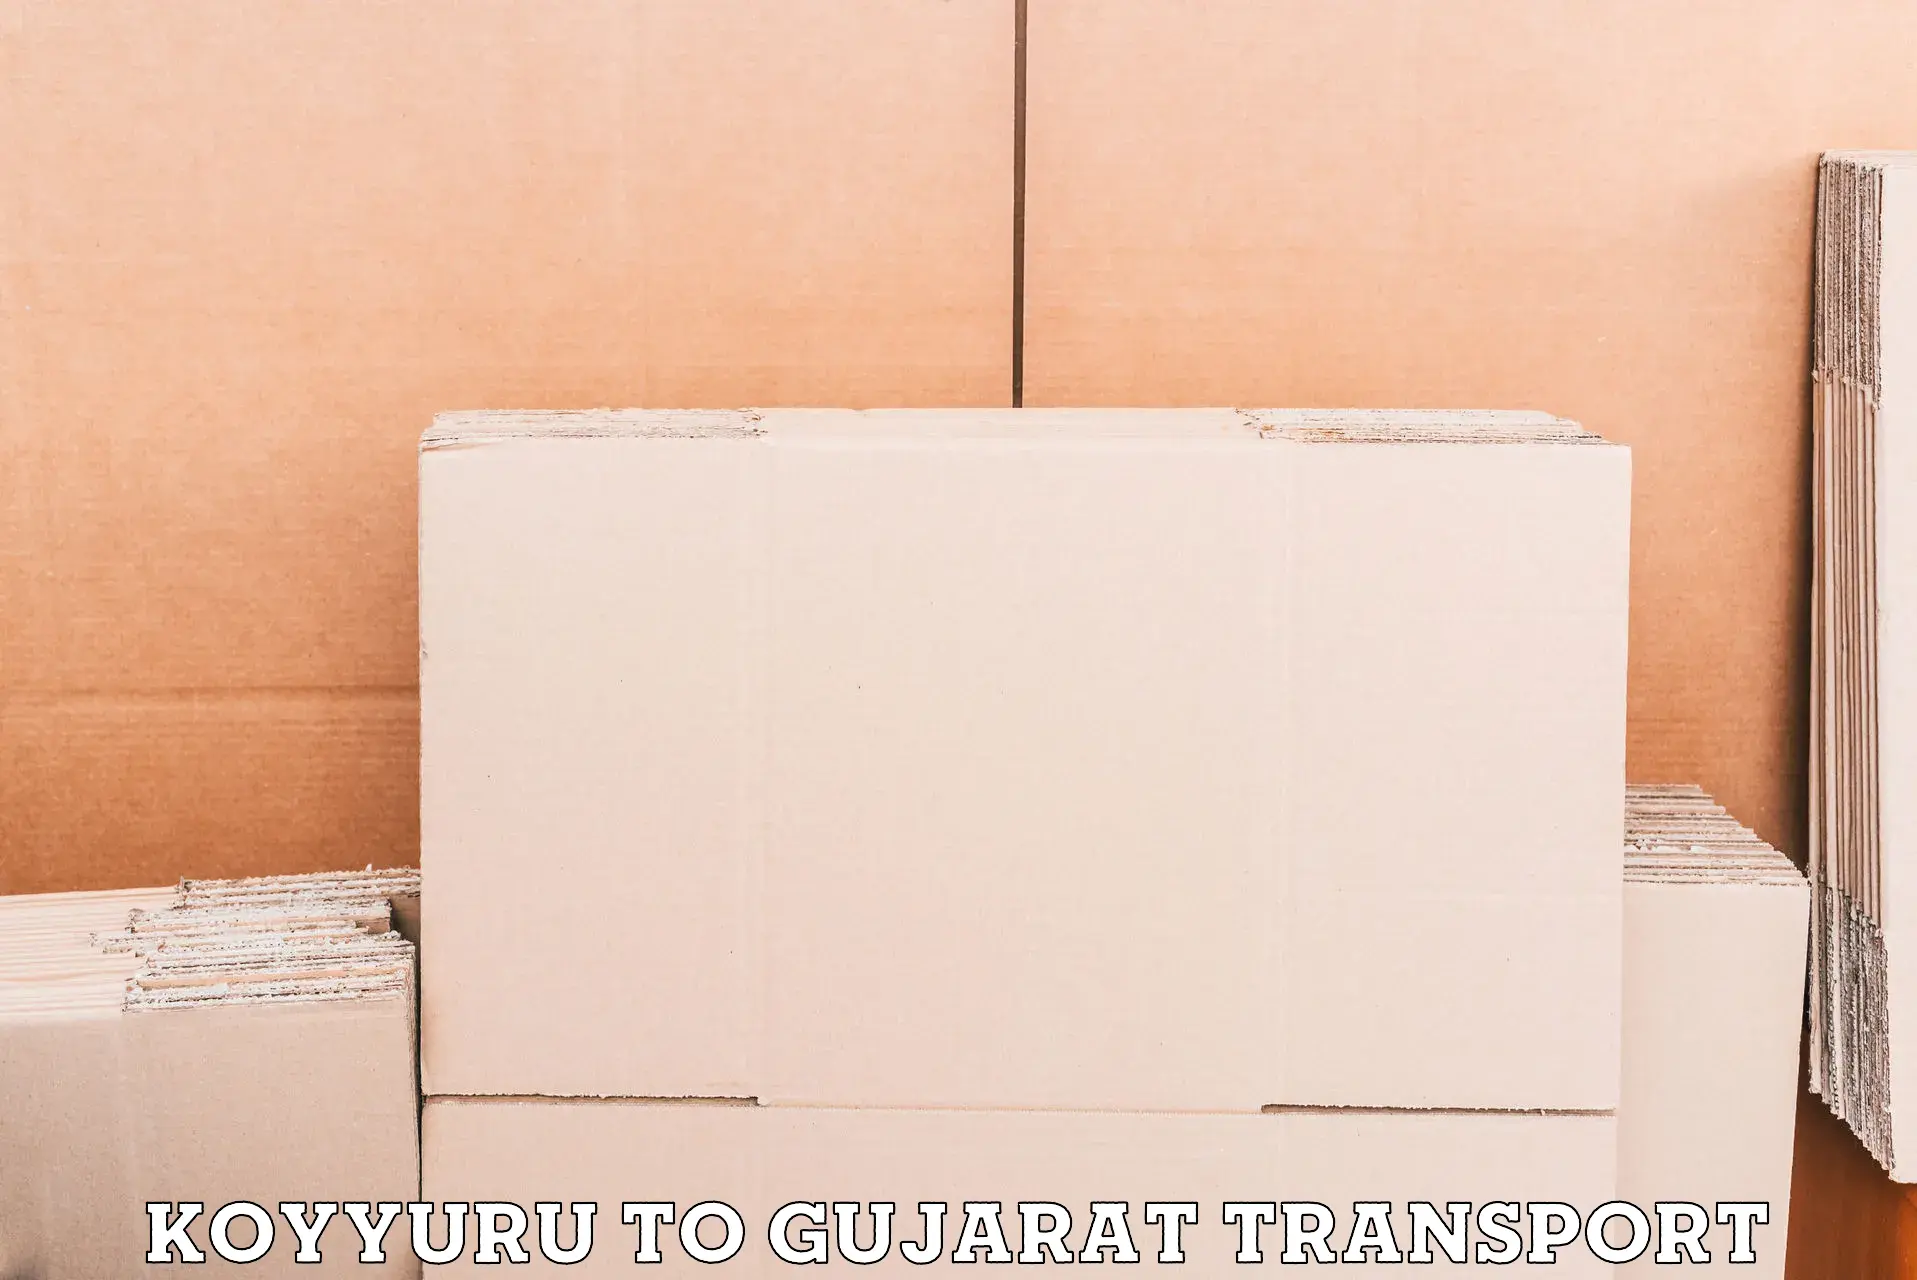 Vehicle transport services Koyyuru to Patan Gujarat